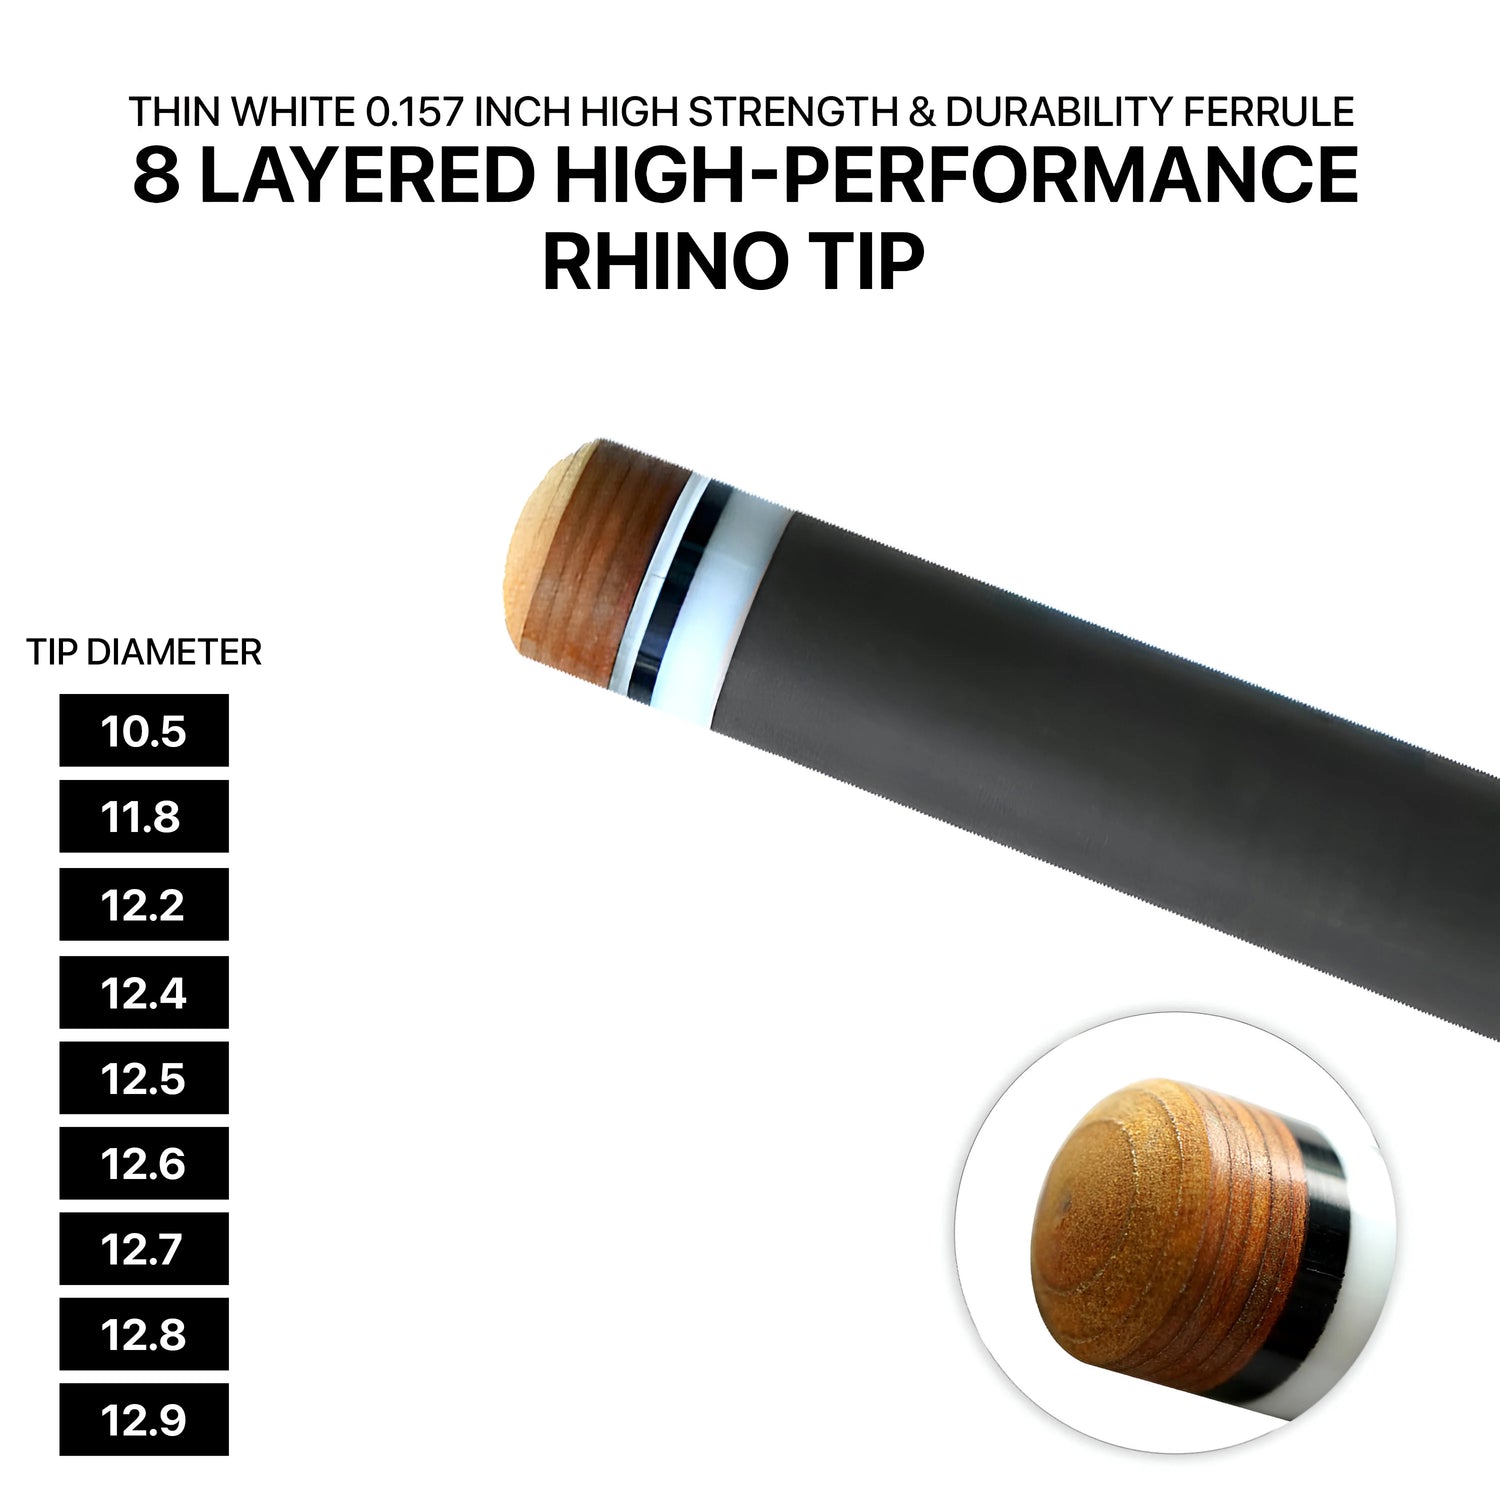 Rhino - 710mm (28'') / 3/8-8 Carbon Carom Single Shaft 12mm